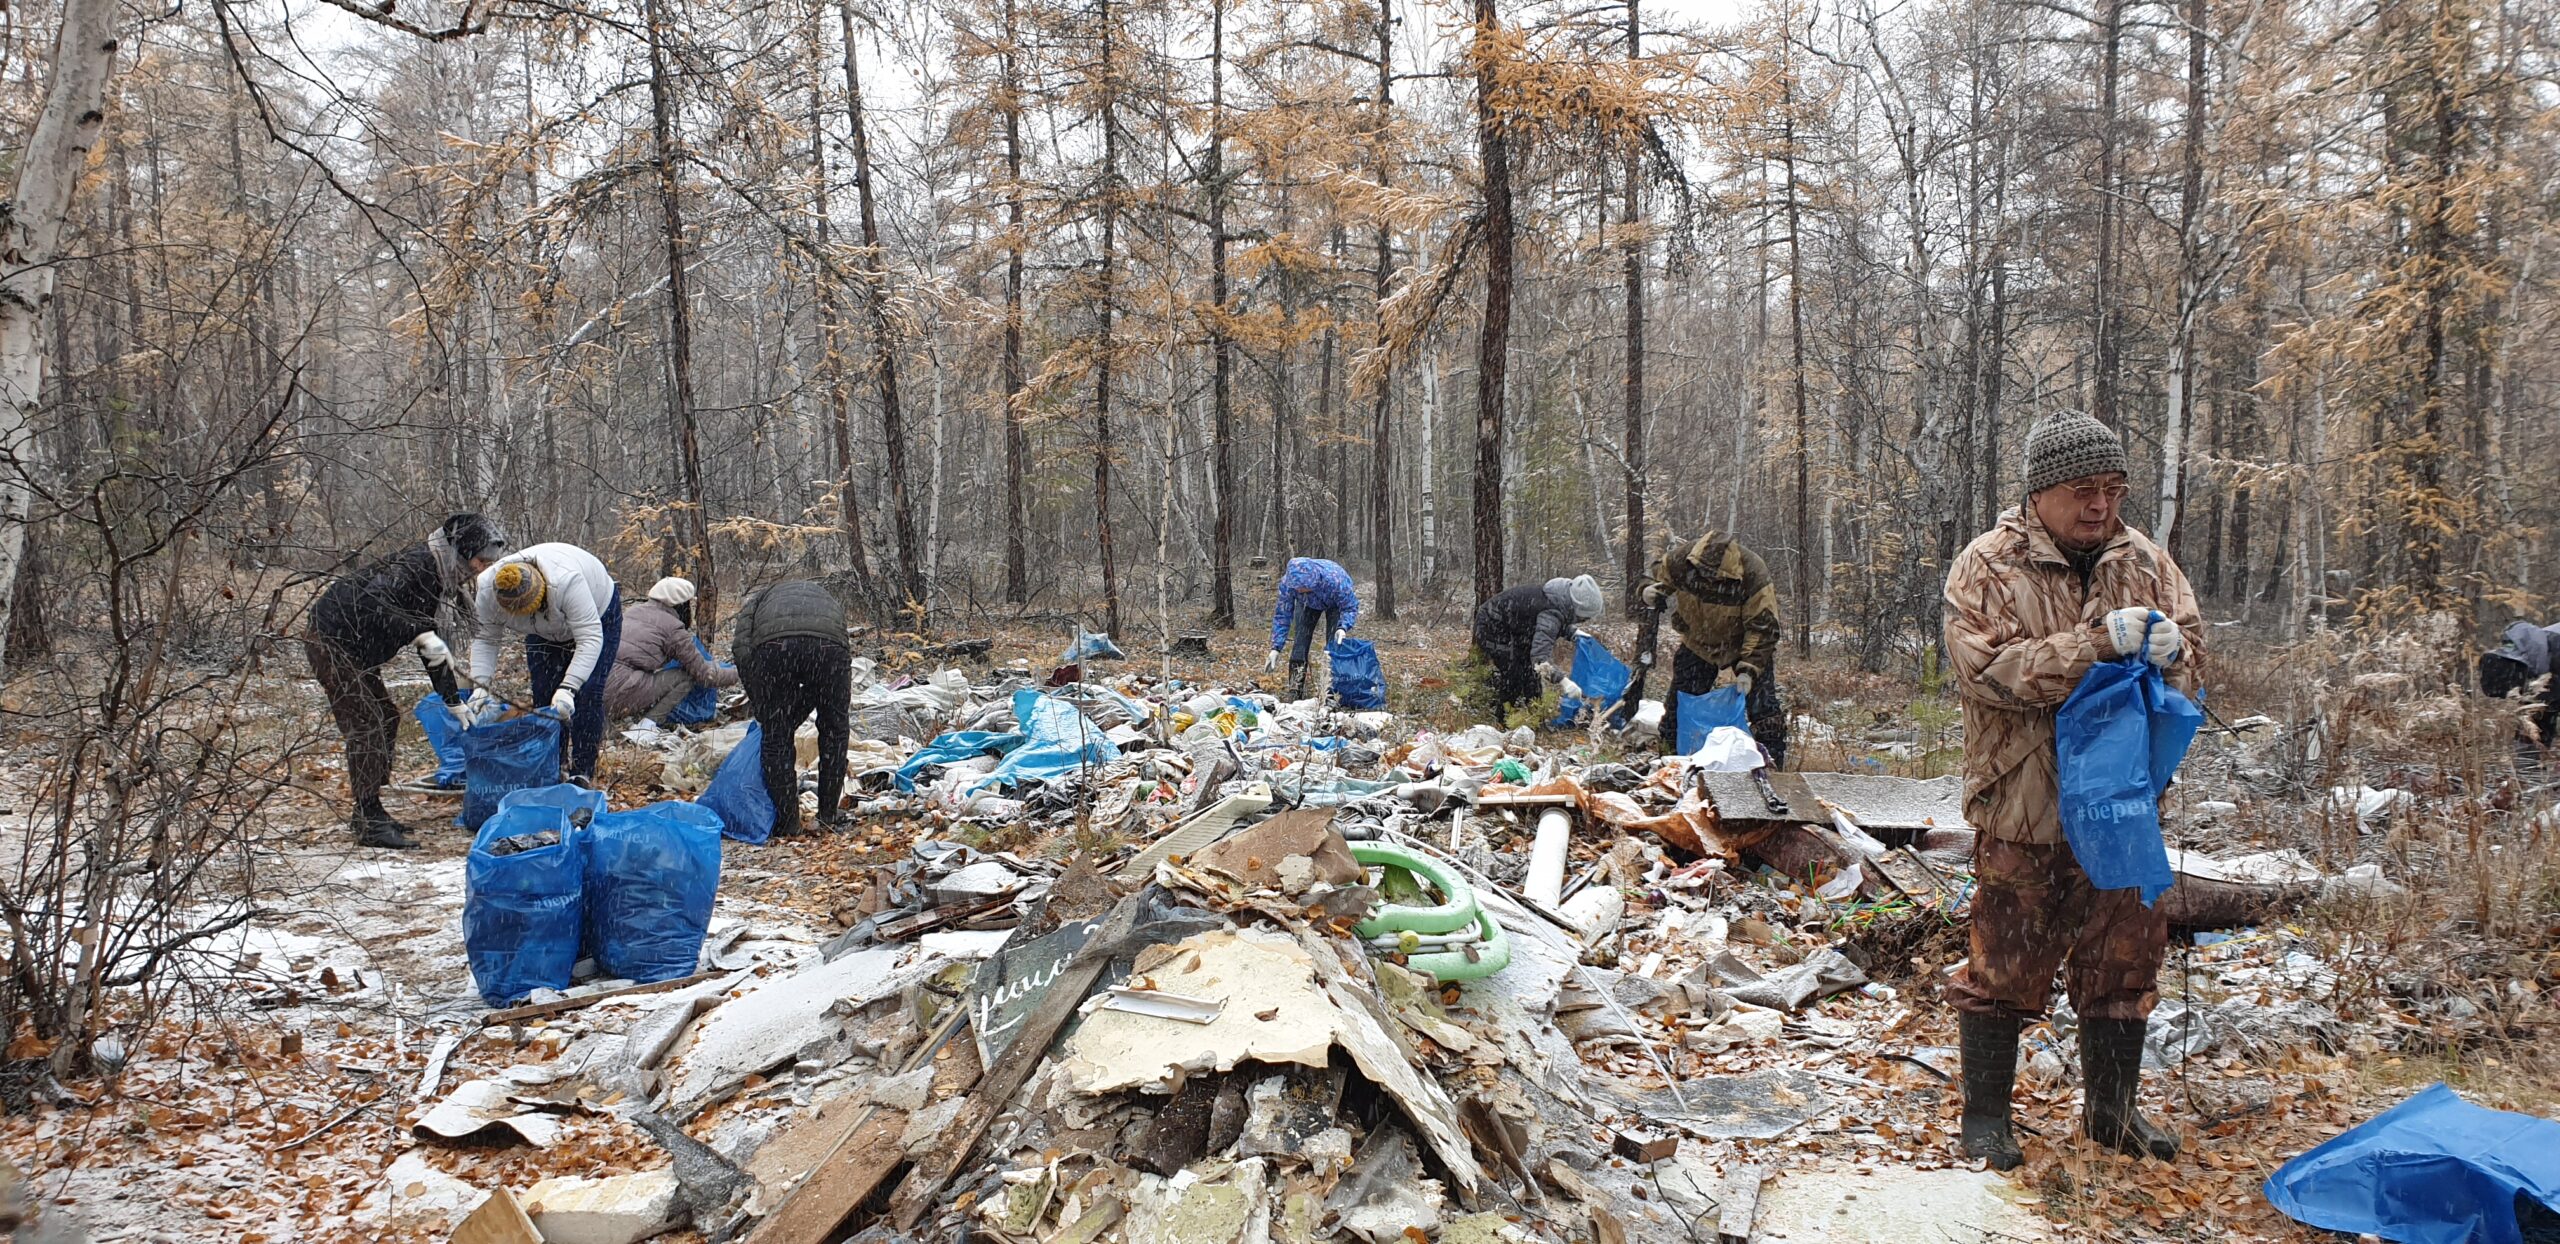 Якутские экологи собрали свыше 500 мешков мусора во время субботника